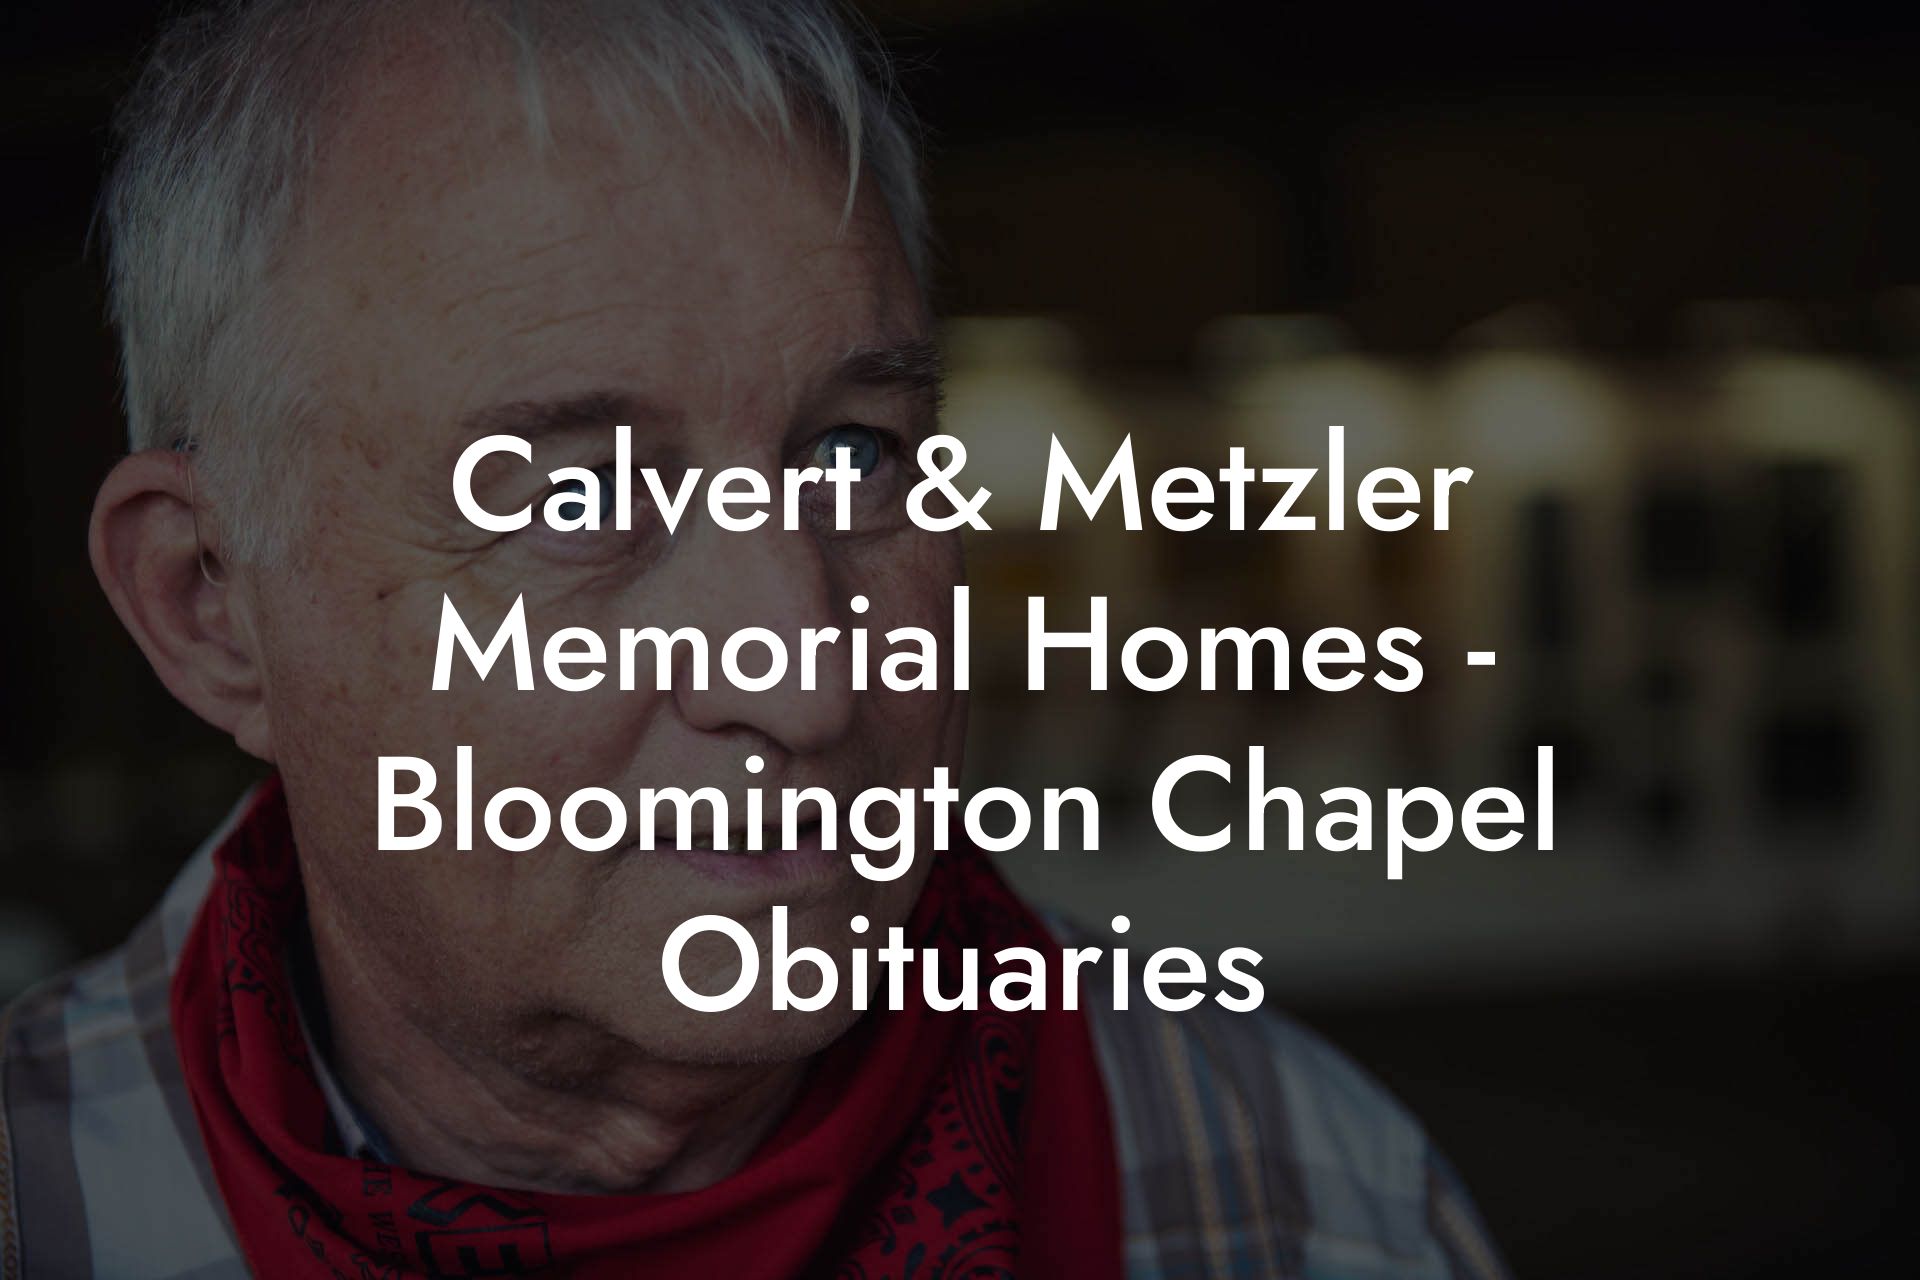 Calvert & Metzler Memorial Homes - Bloomington Chapel Obituaries